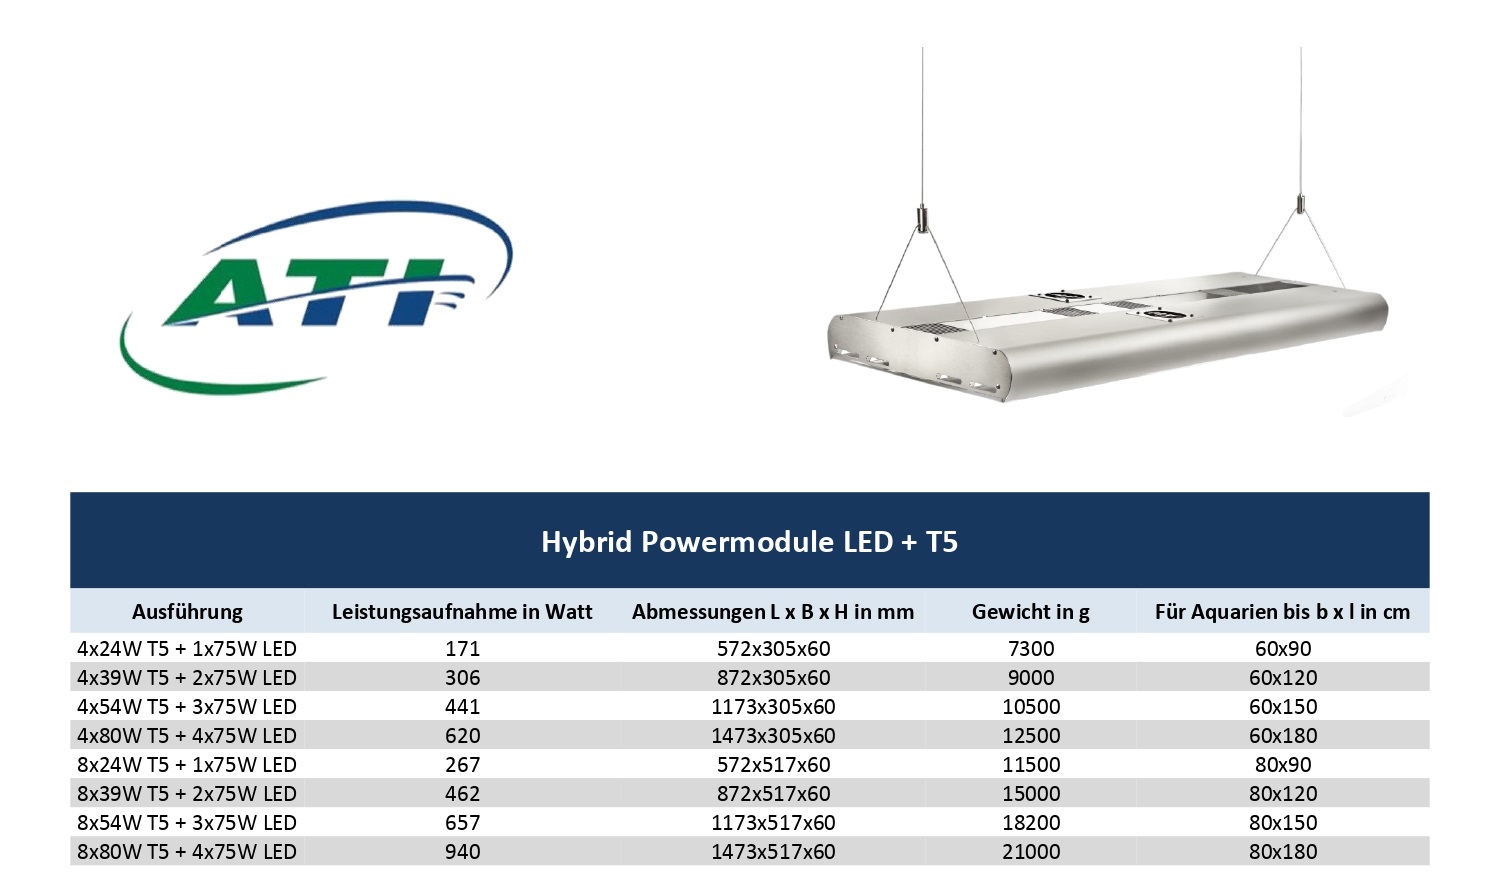 ATI Hybrid LED-Powermodul 4x24 Watt T5 + 1x75 Watt LED WiFi  weiss (1010000)